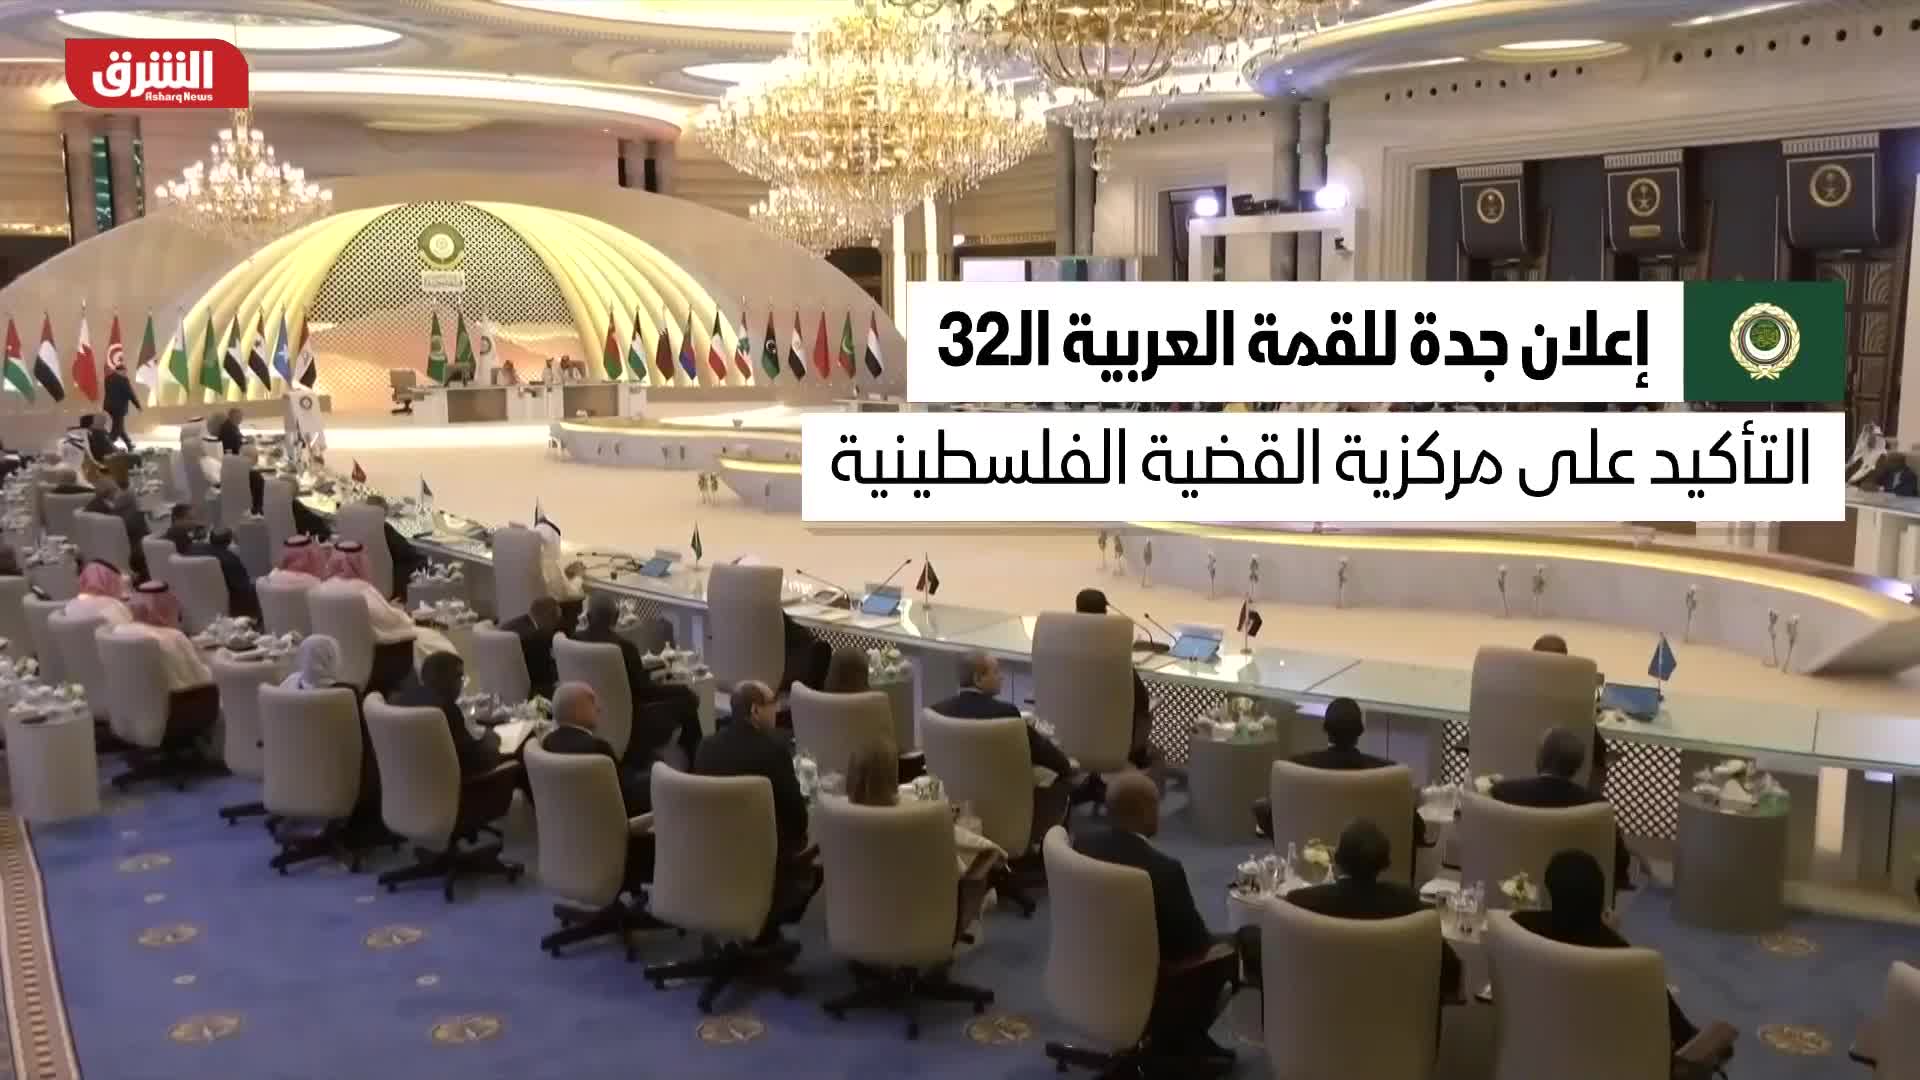 إعلان جدة للقمة العربية الـ32